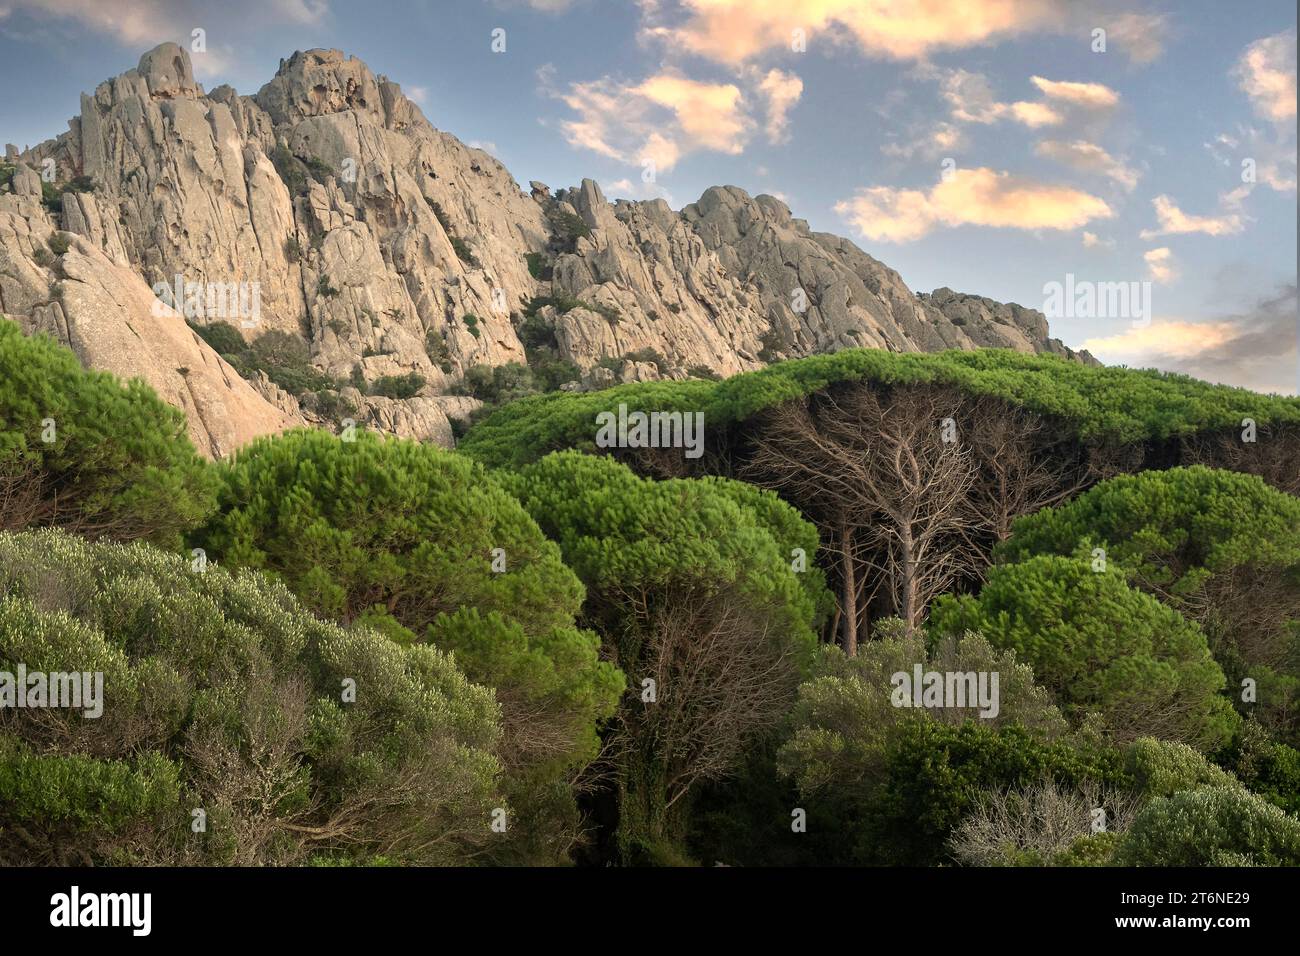 Forêt de pins et montagne rocheuse sur l'île de Caprera, Sardaigne, Italie Banque D'Images